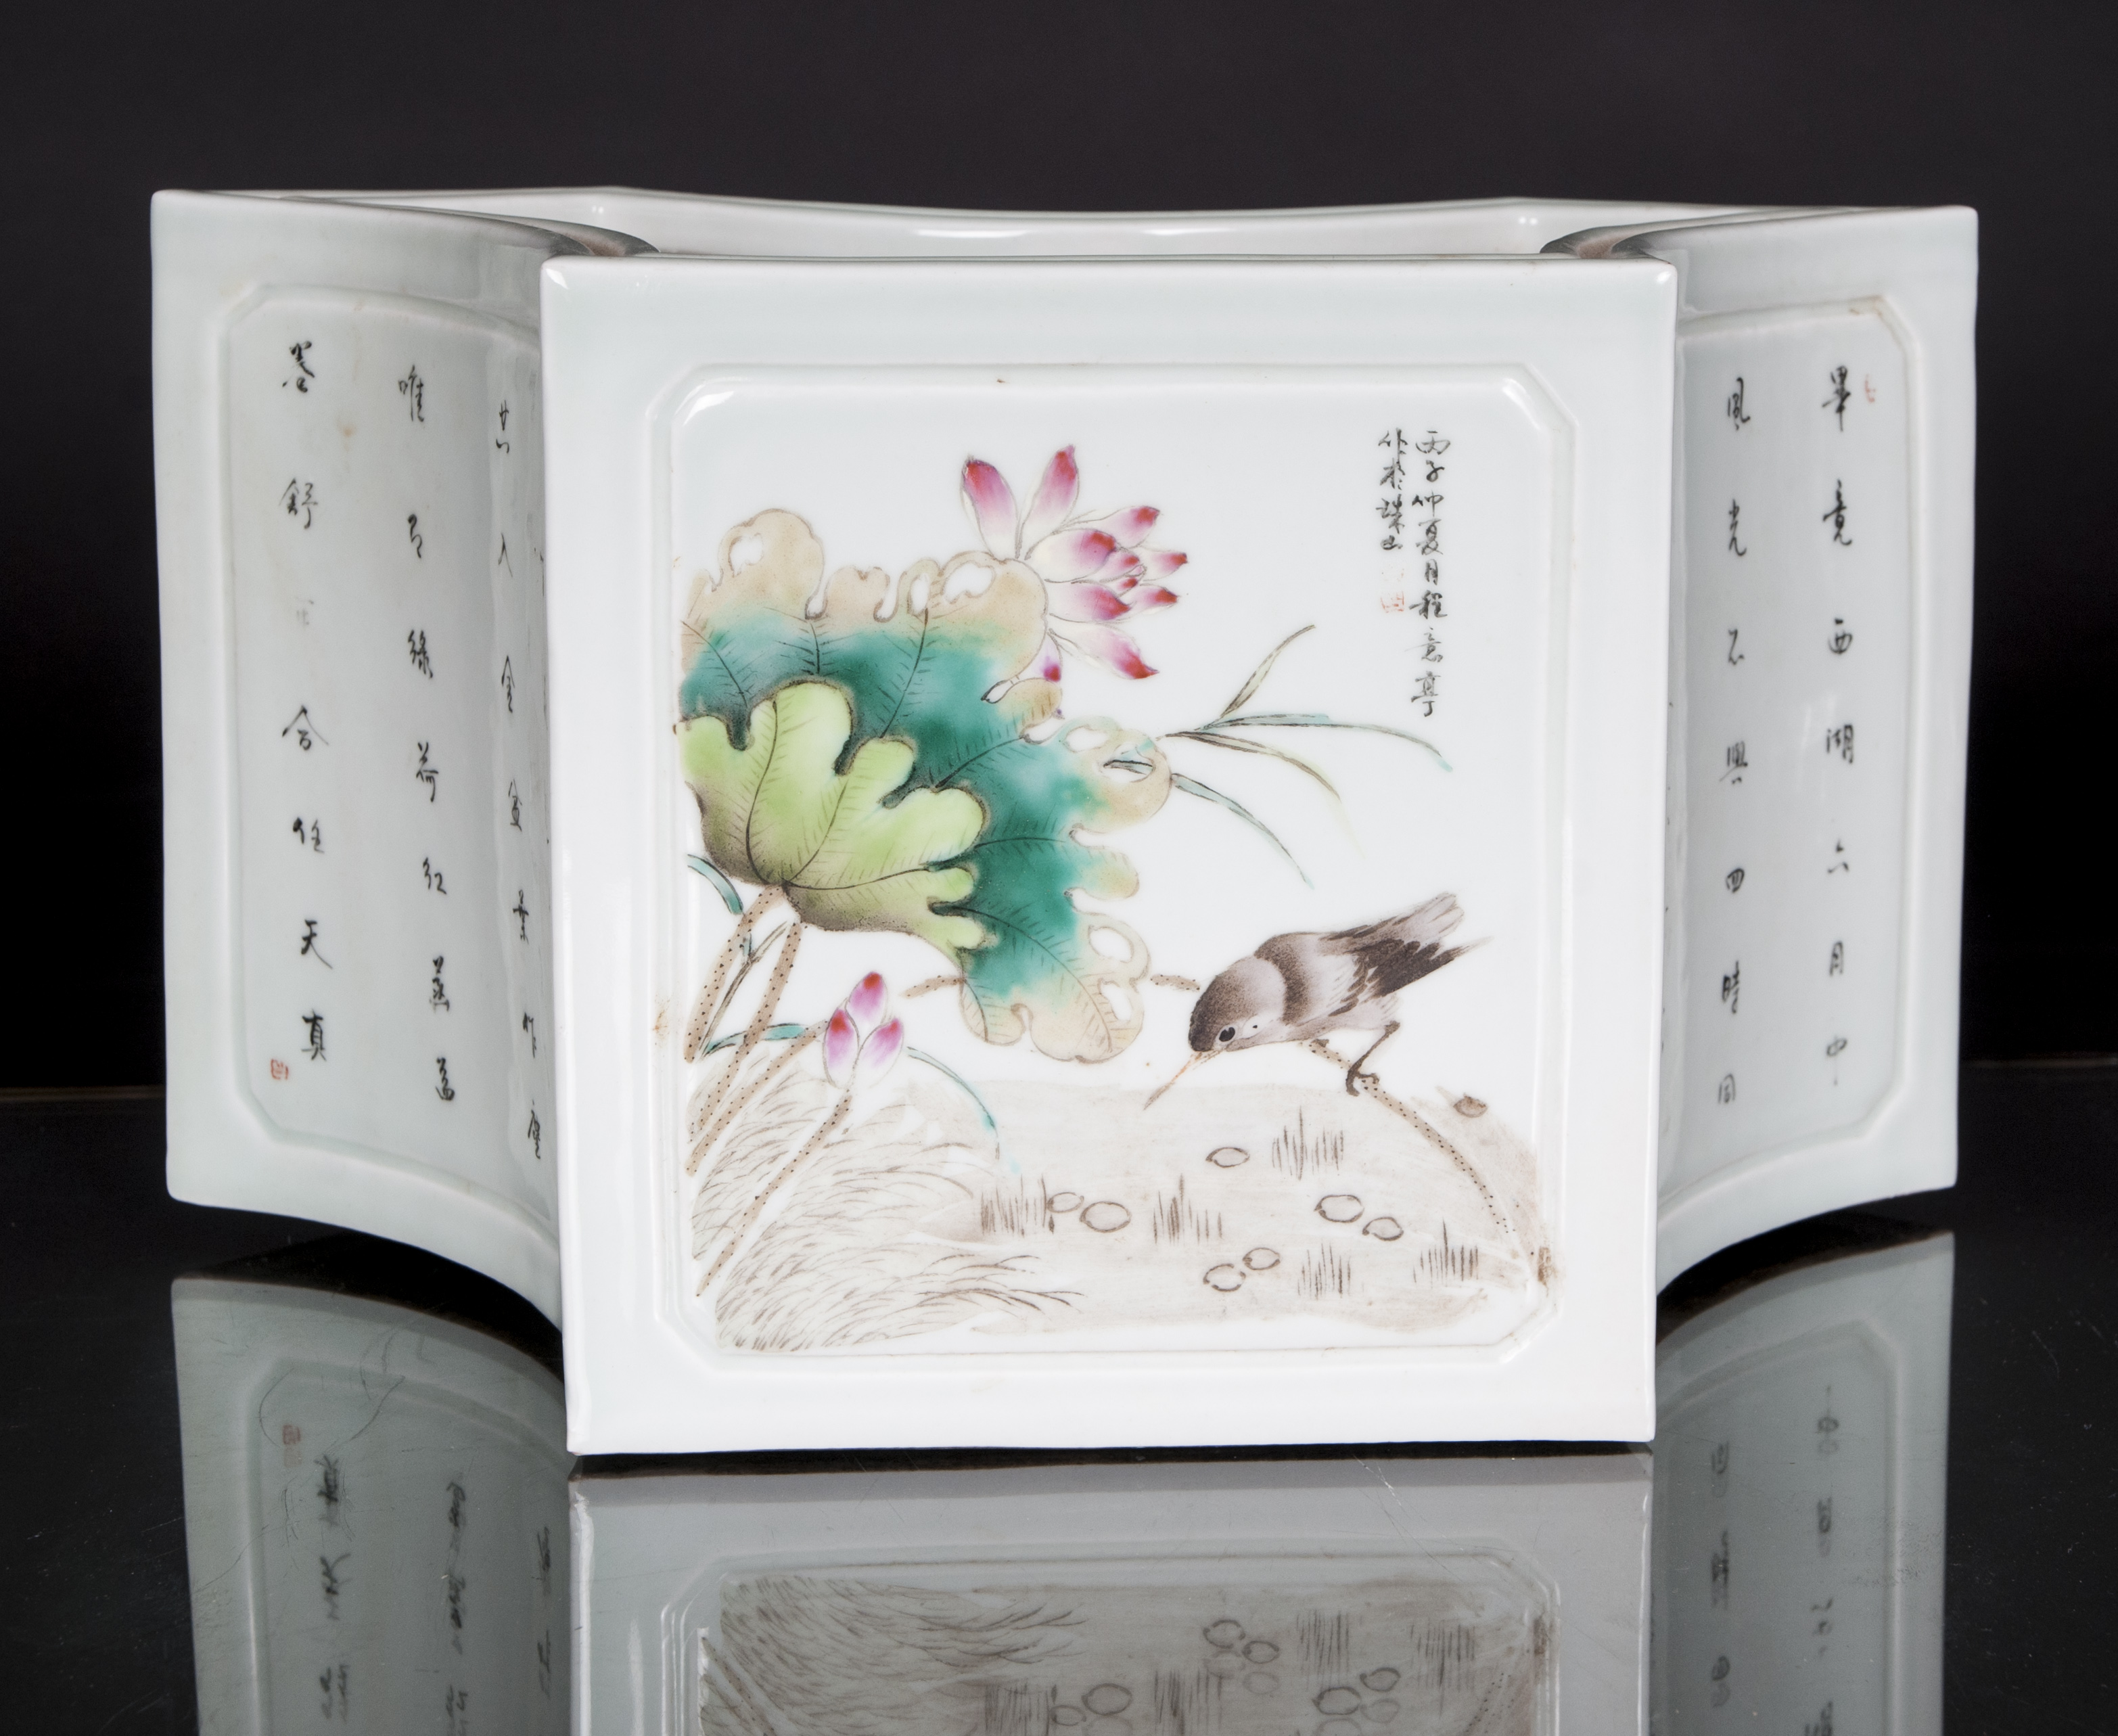 Sechskant-Vase mit Vögeln und Insekten - Bild 2